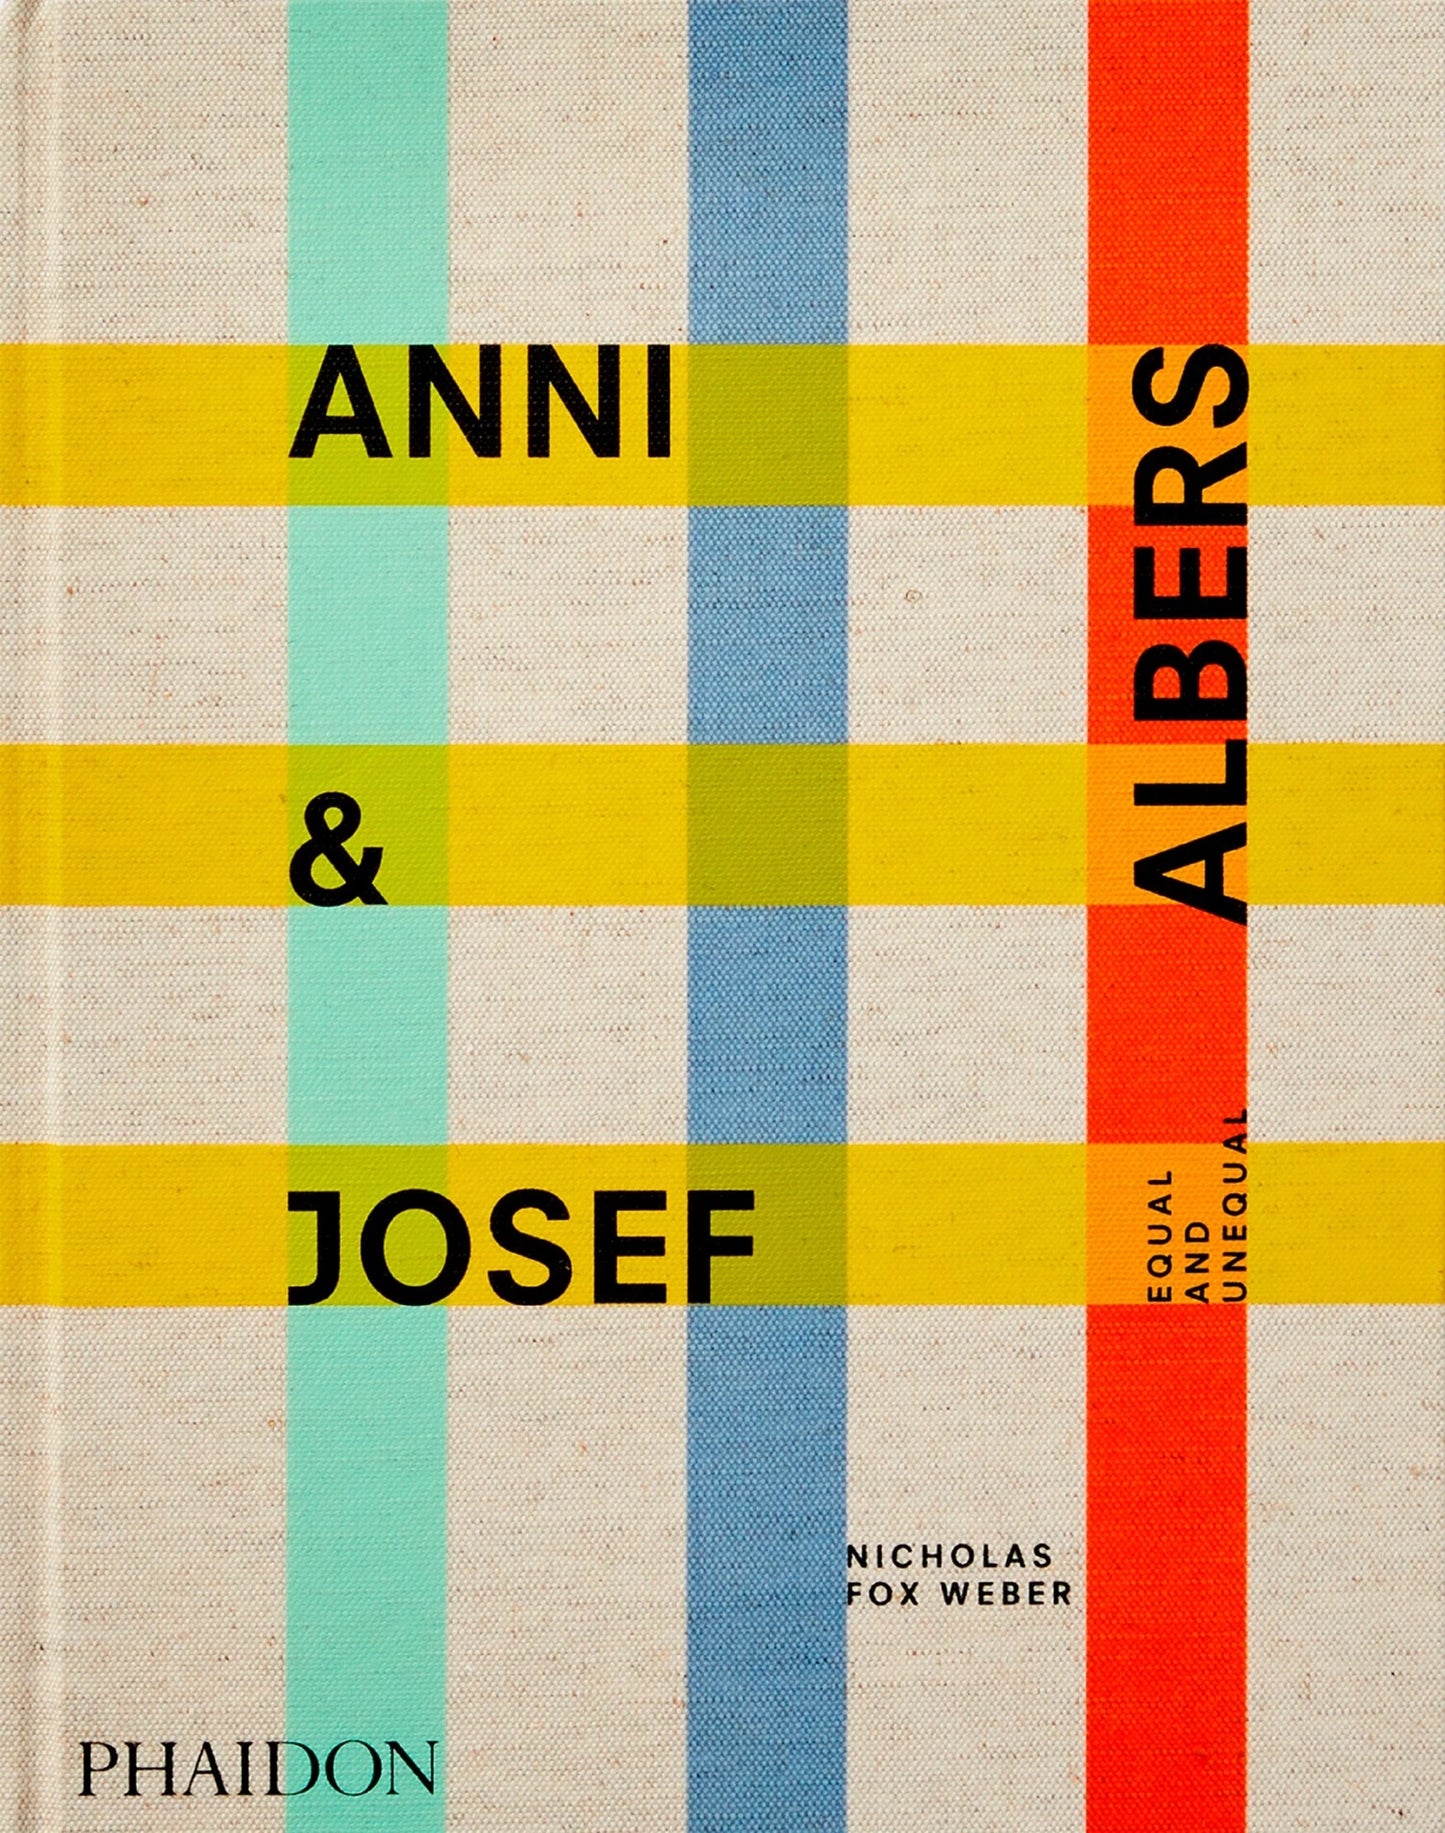 Anni & Josef Albers, égaux et inégaux